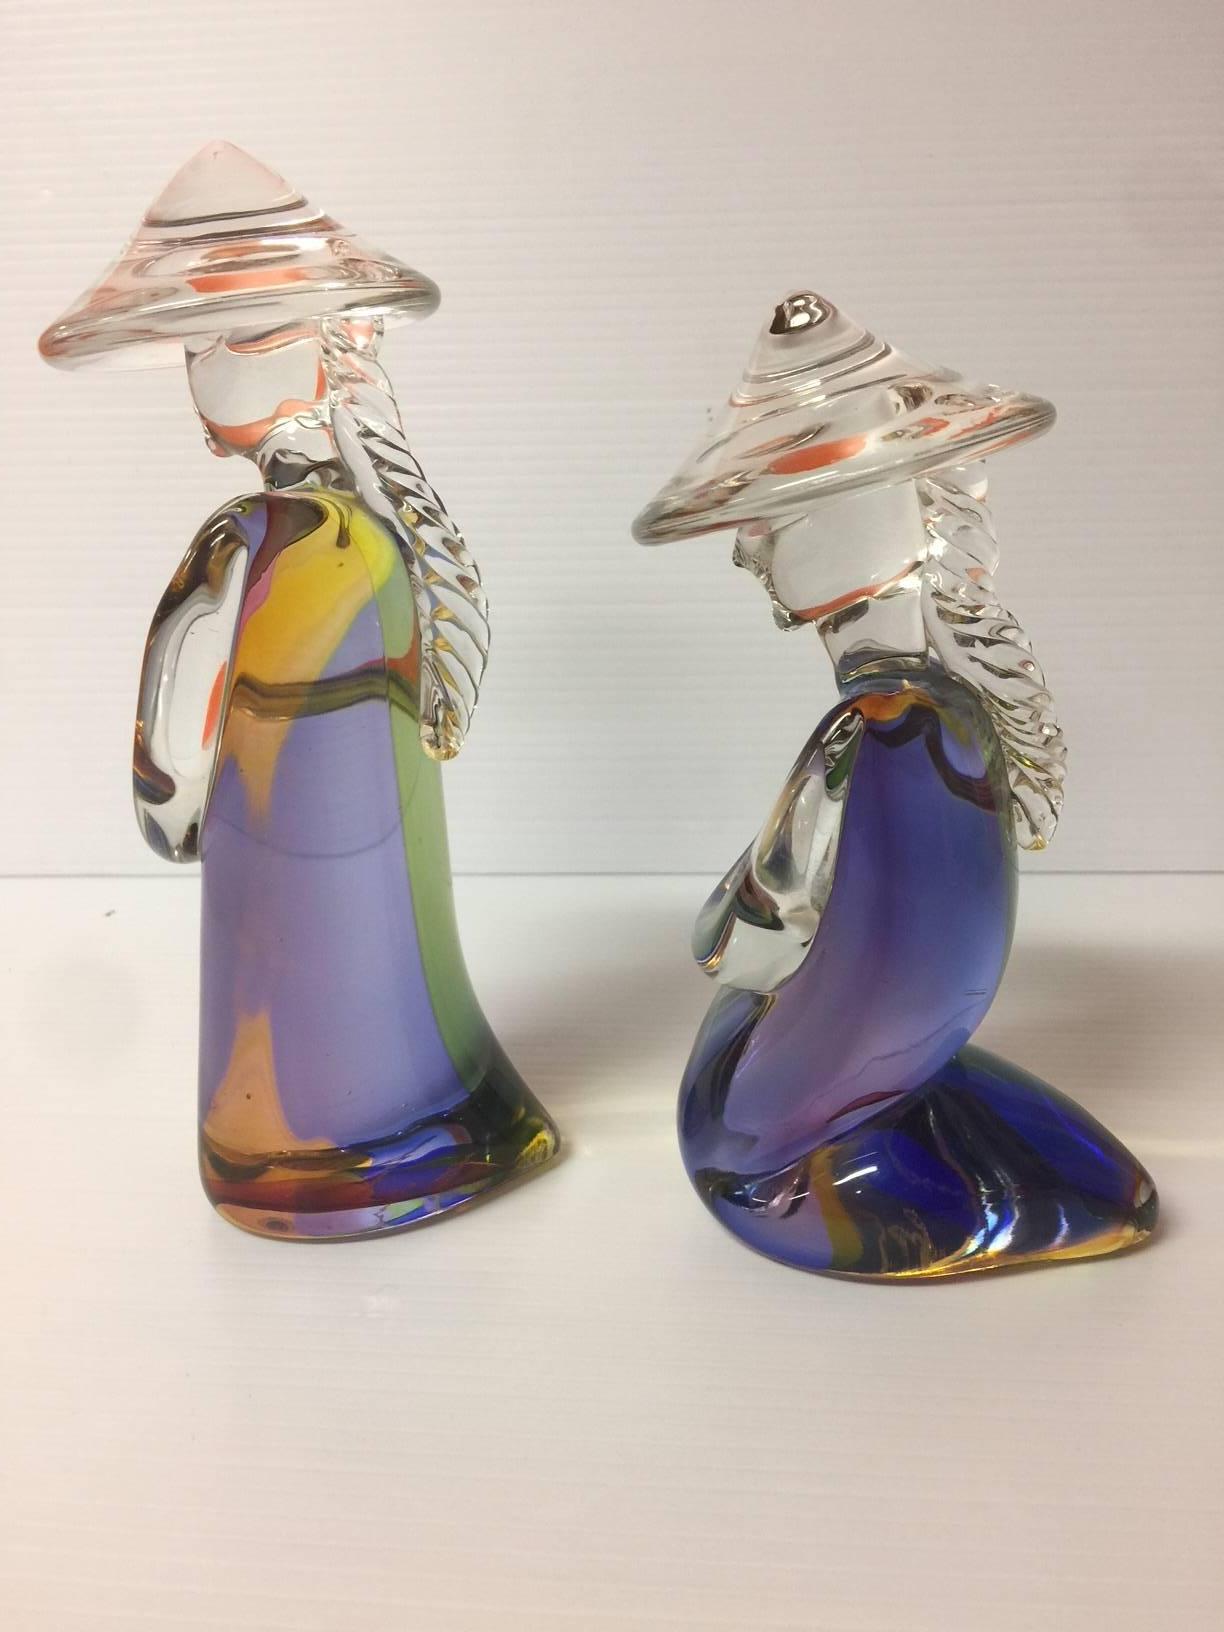 murano glass chinese figurines